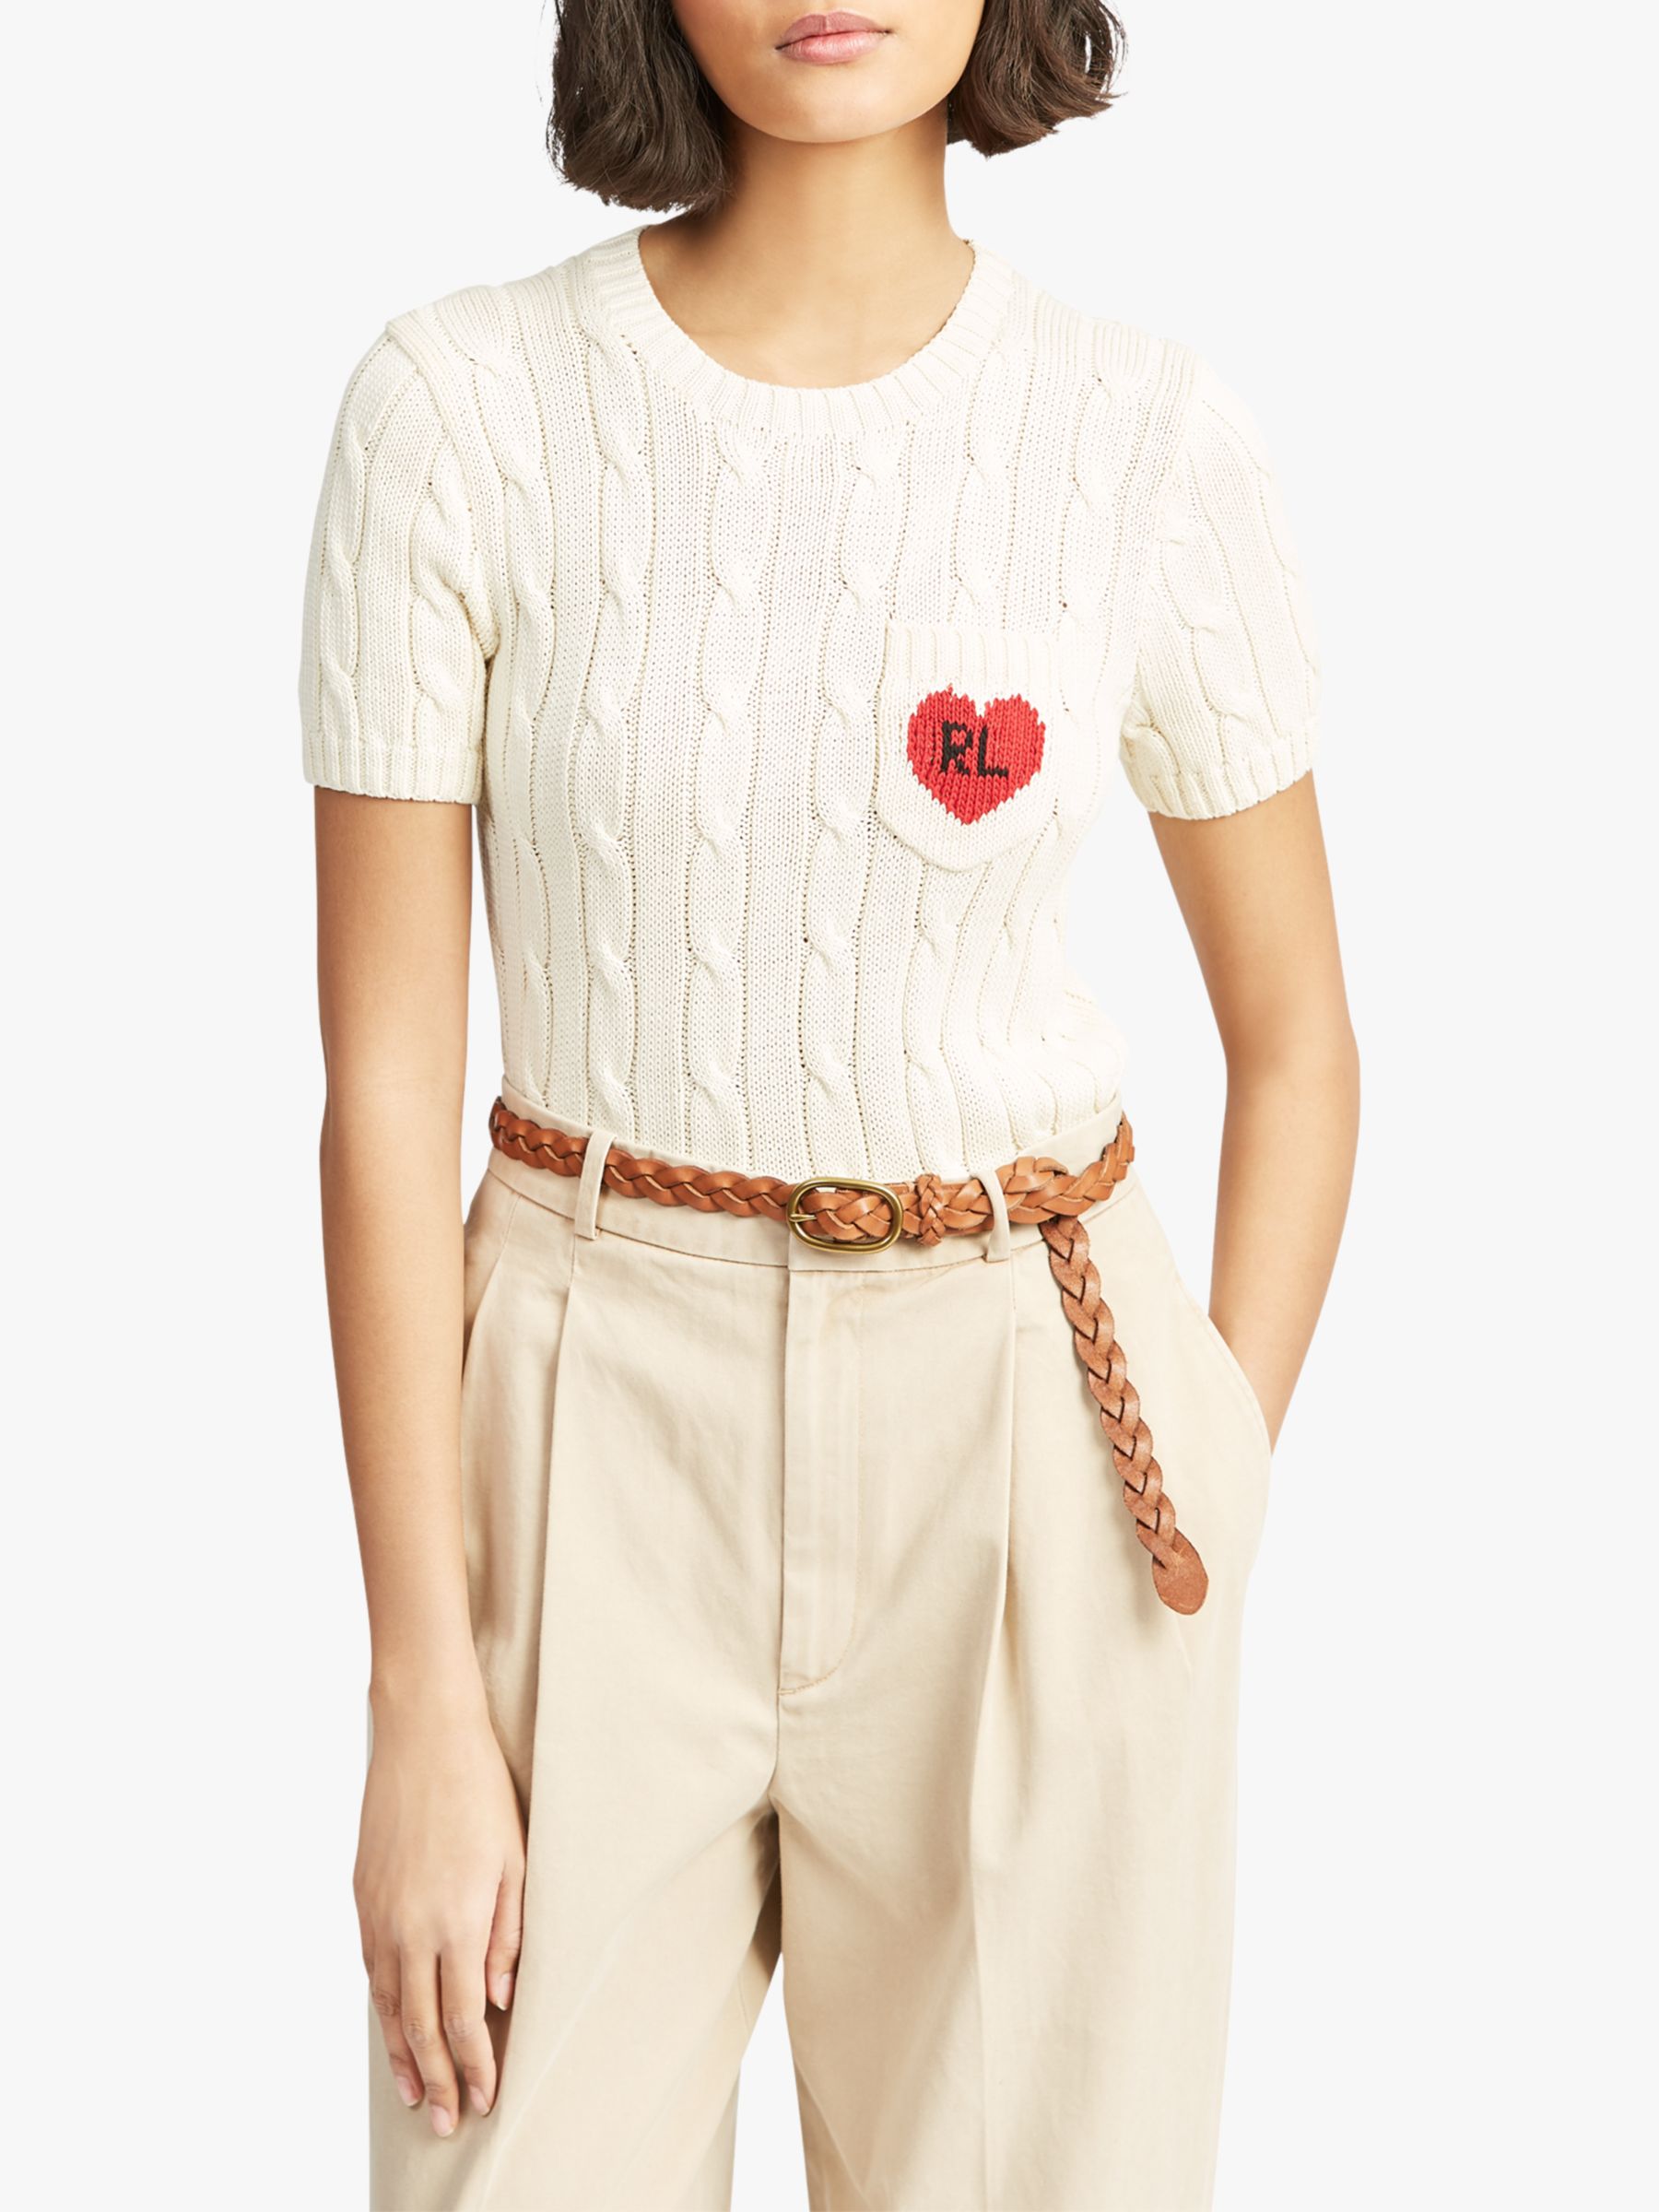 Polo Ralph Lauren Heart Short Sleeve Jumper, Cream/Red